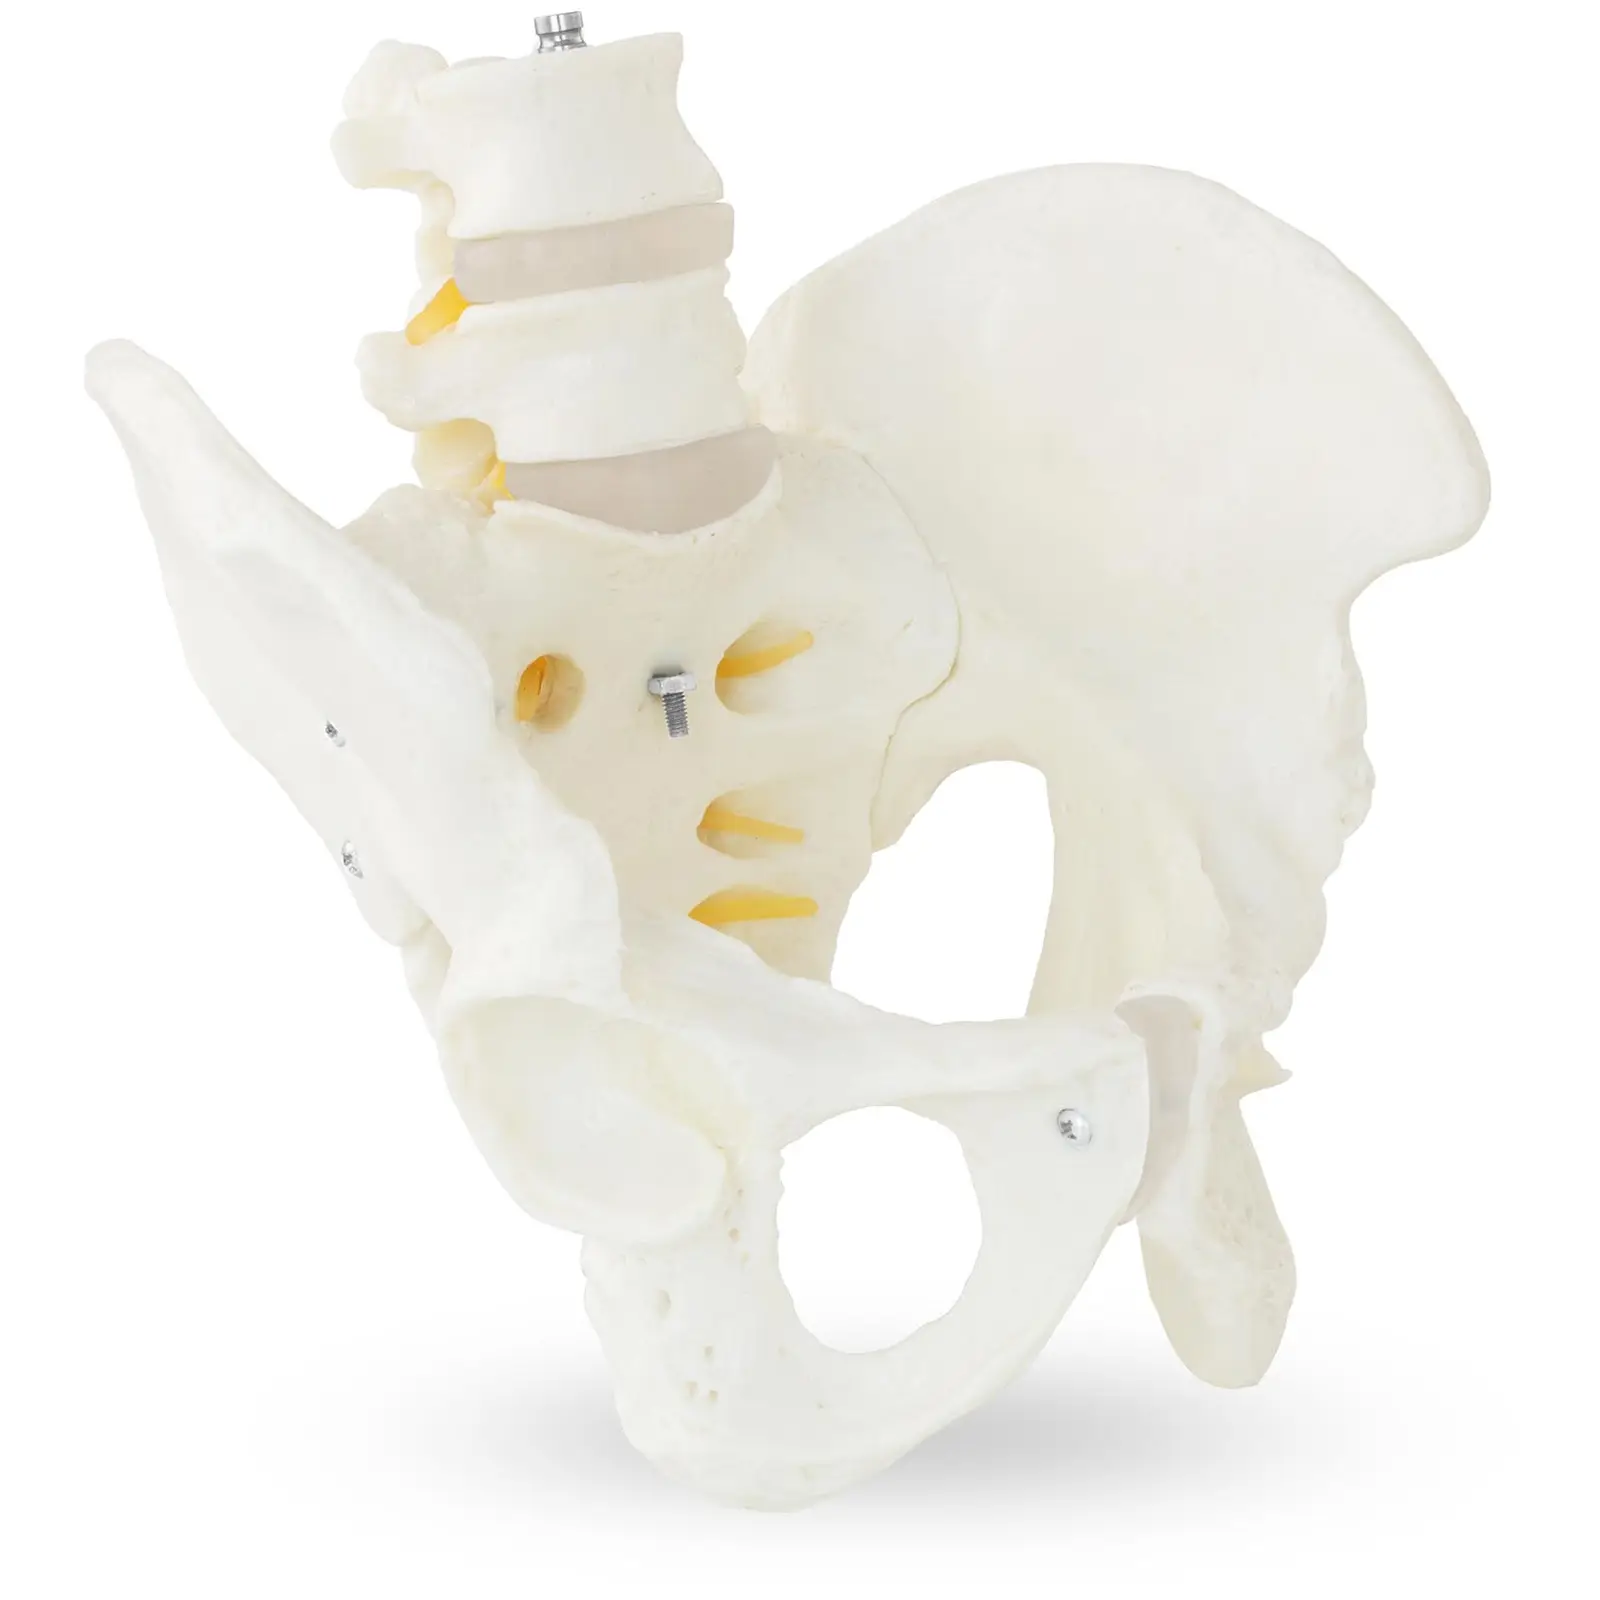 Miednica z kręgami lędźwiowymi - model anatomiczny